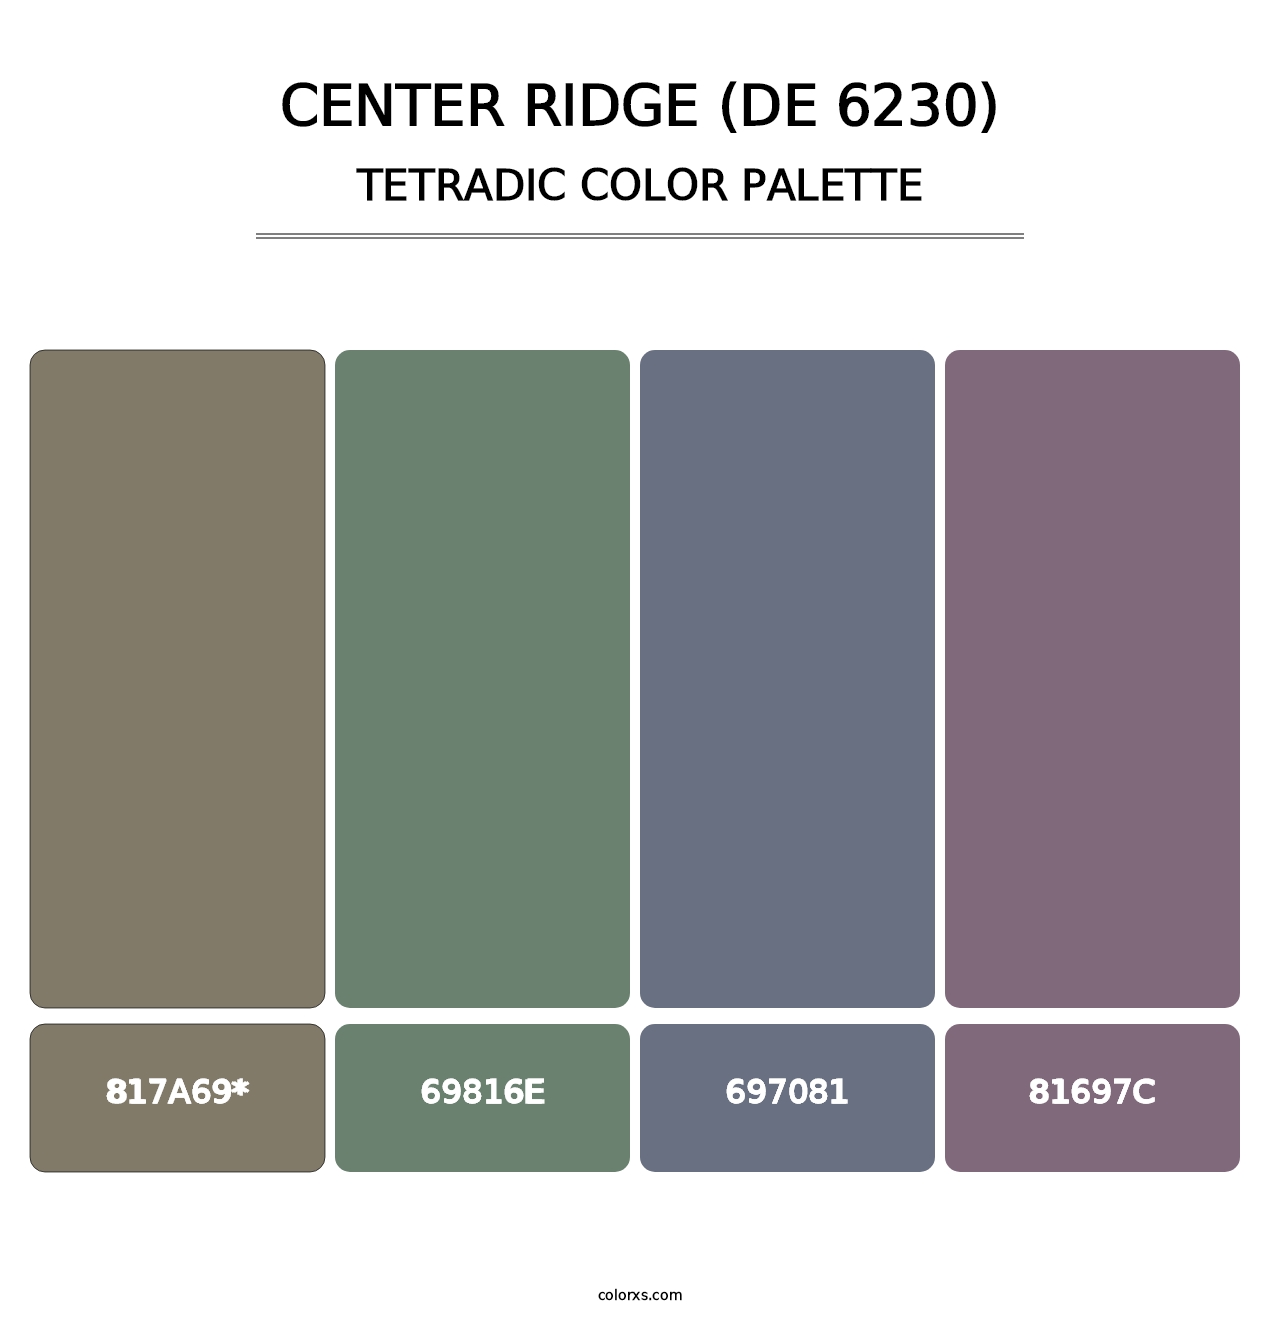 Center Ridge (DE 6230) - Tetradic Color Palette